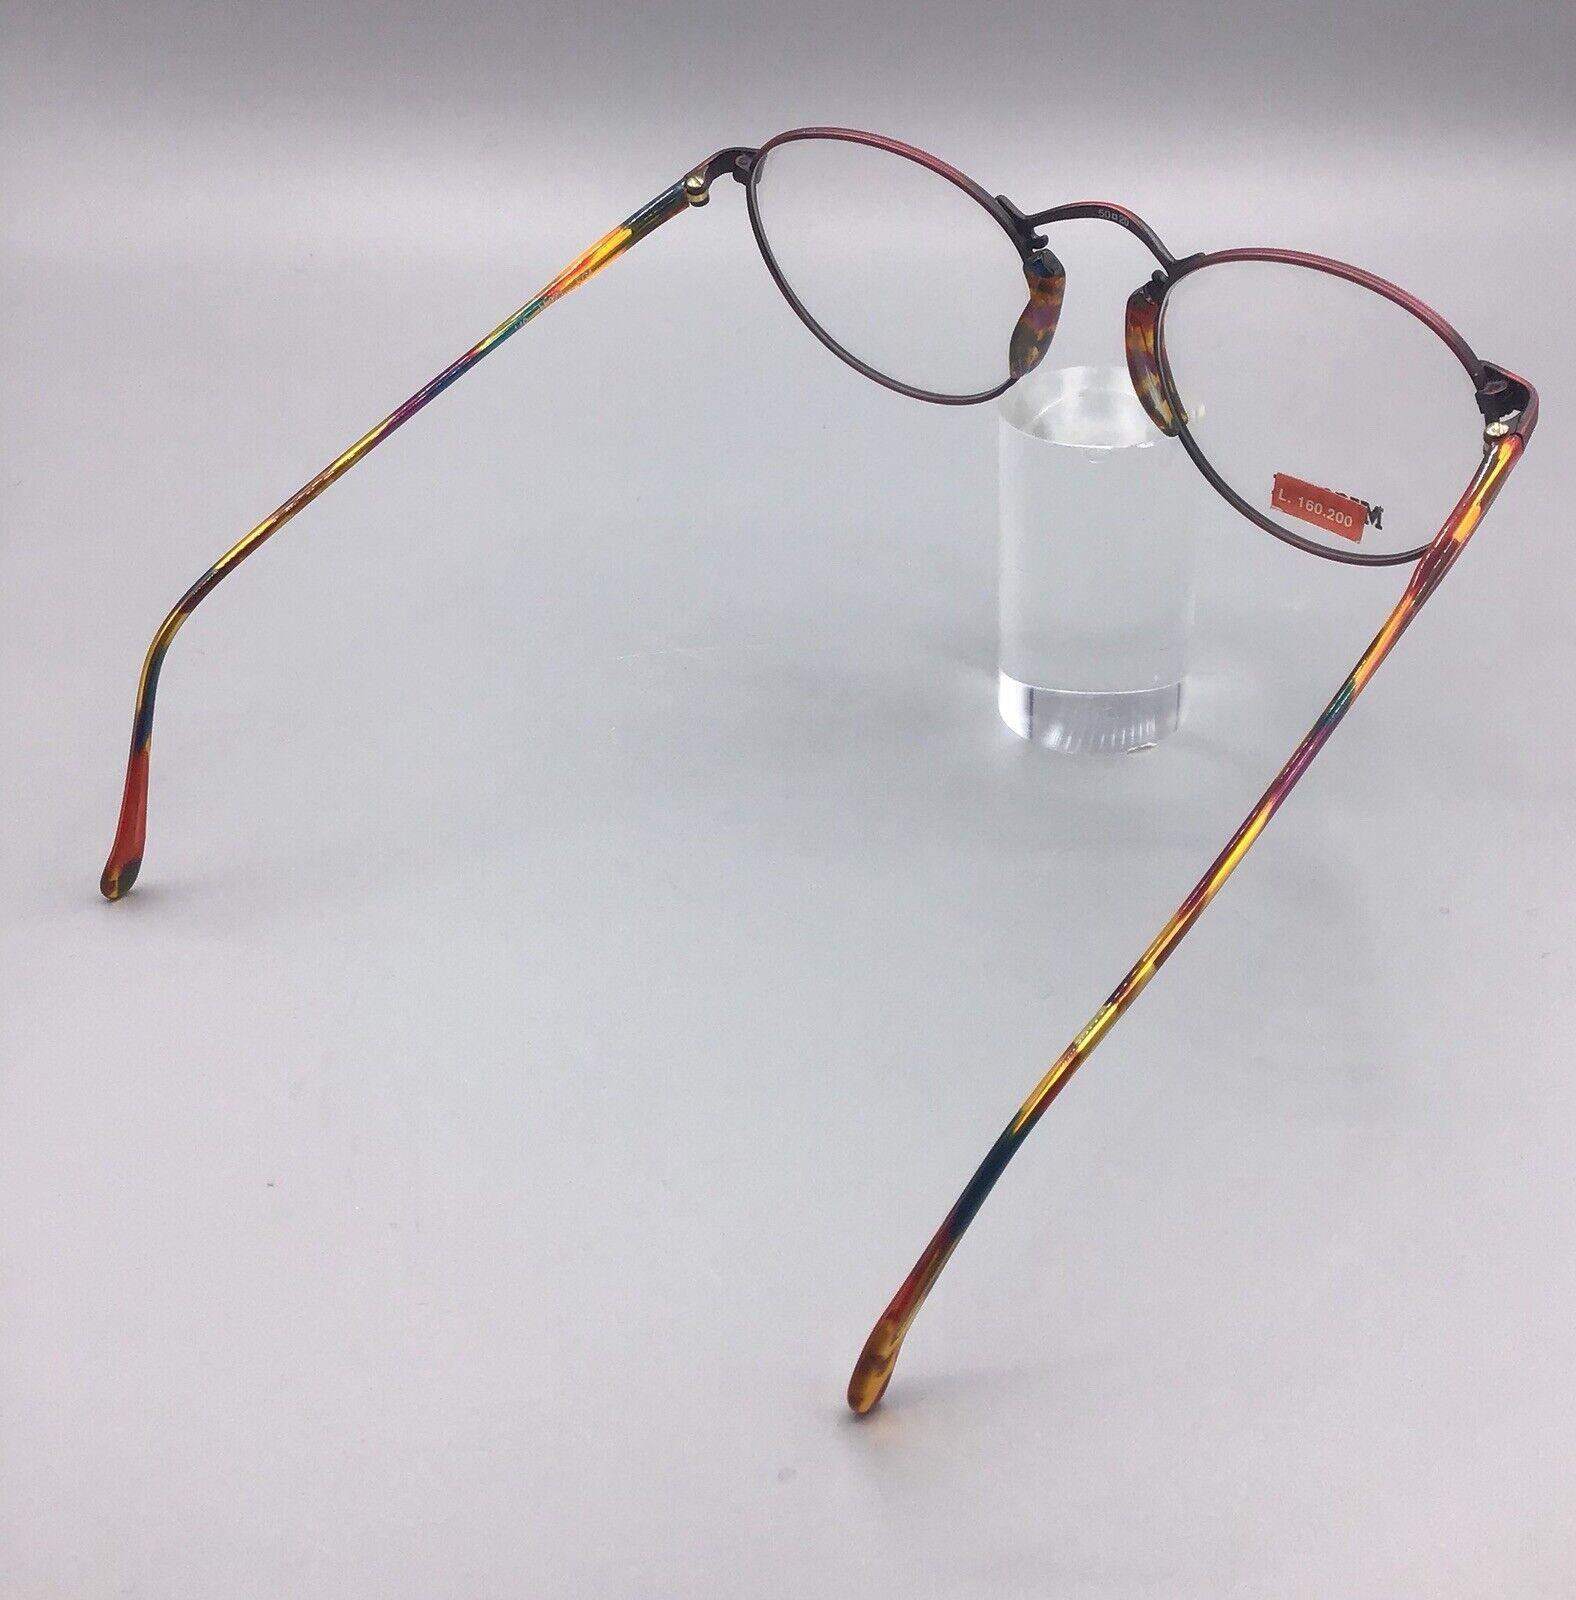 Missoni M373 EG4 occhiale vintage eyewear frame brillen lunettes